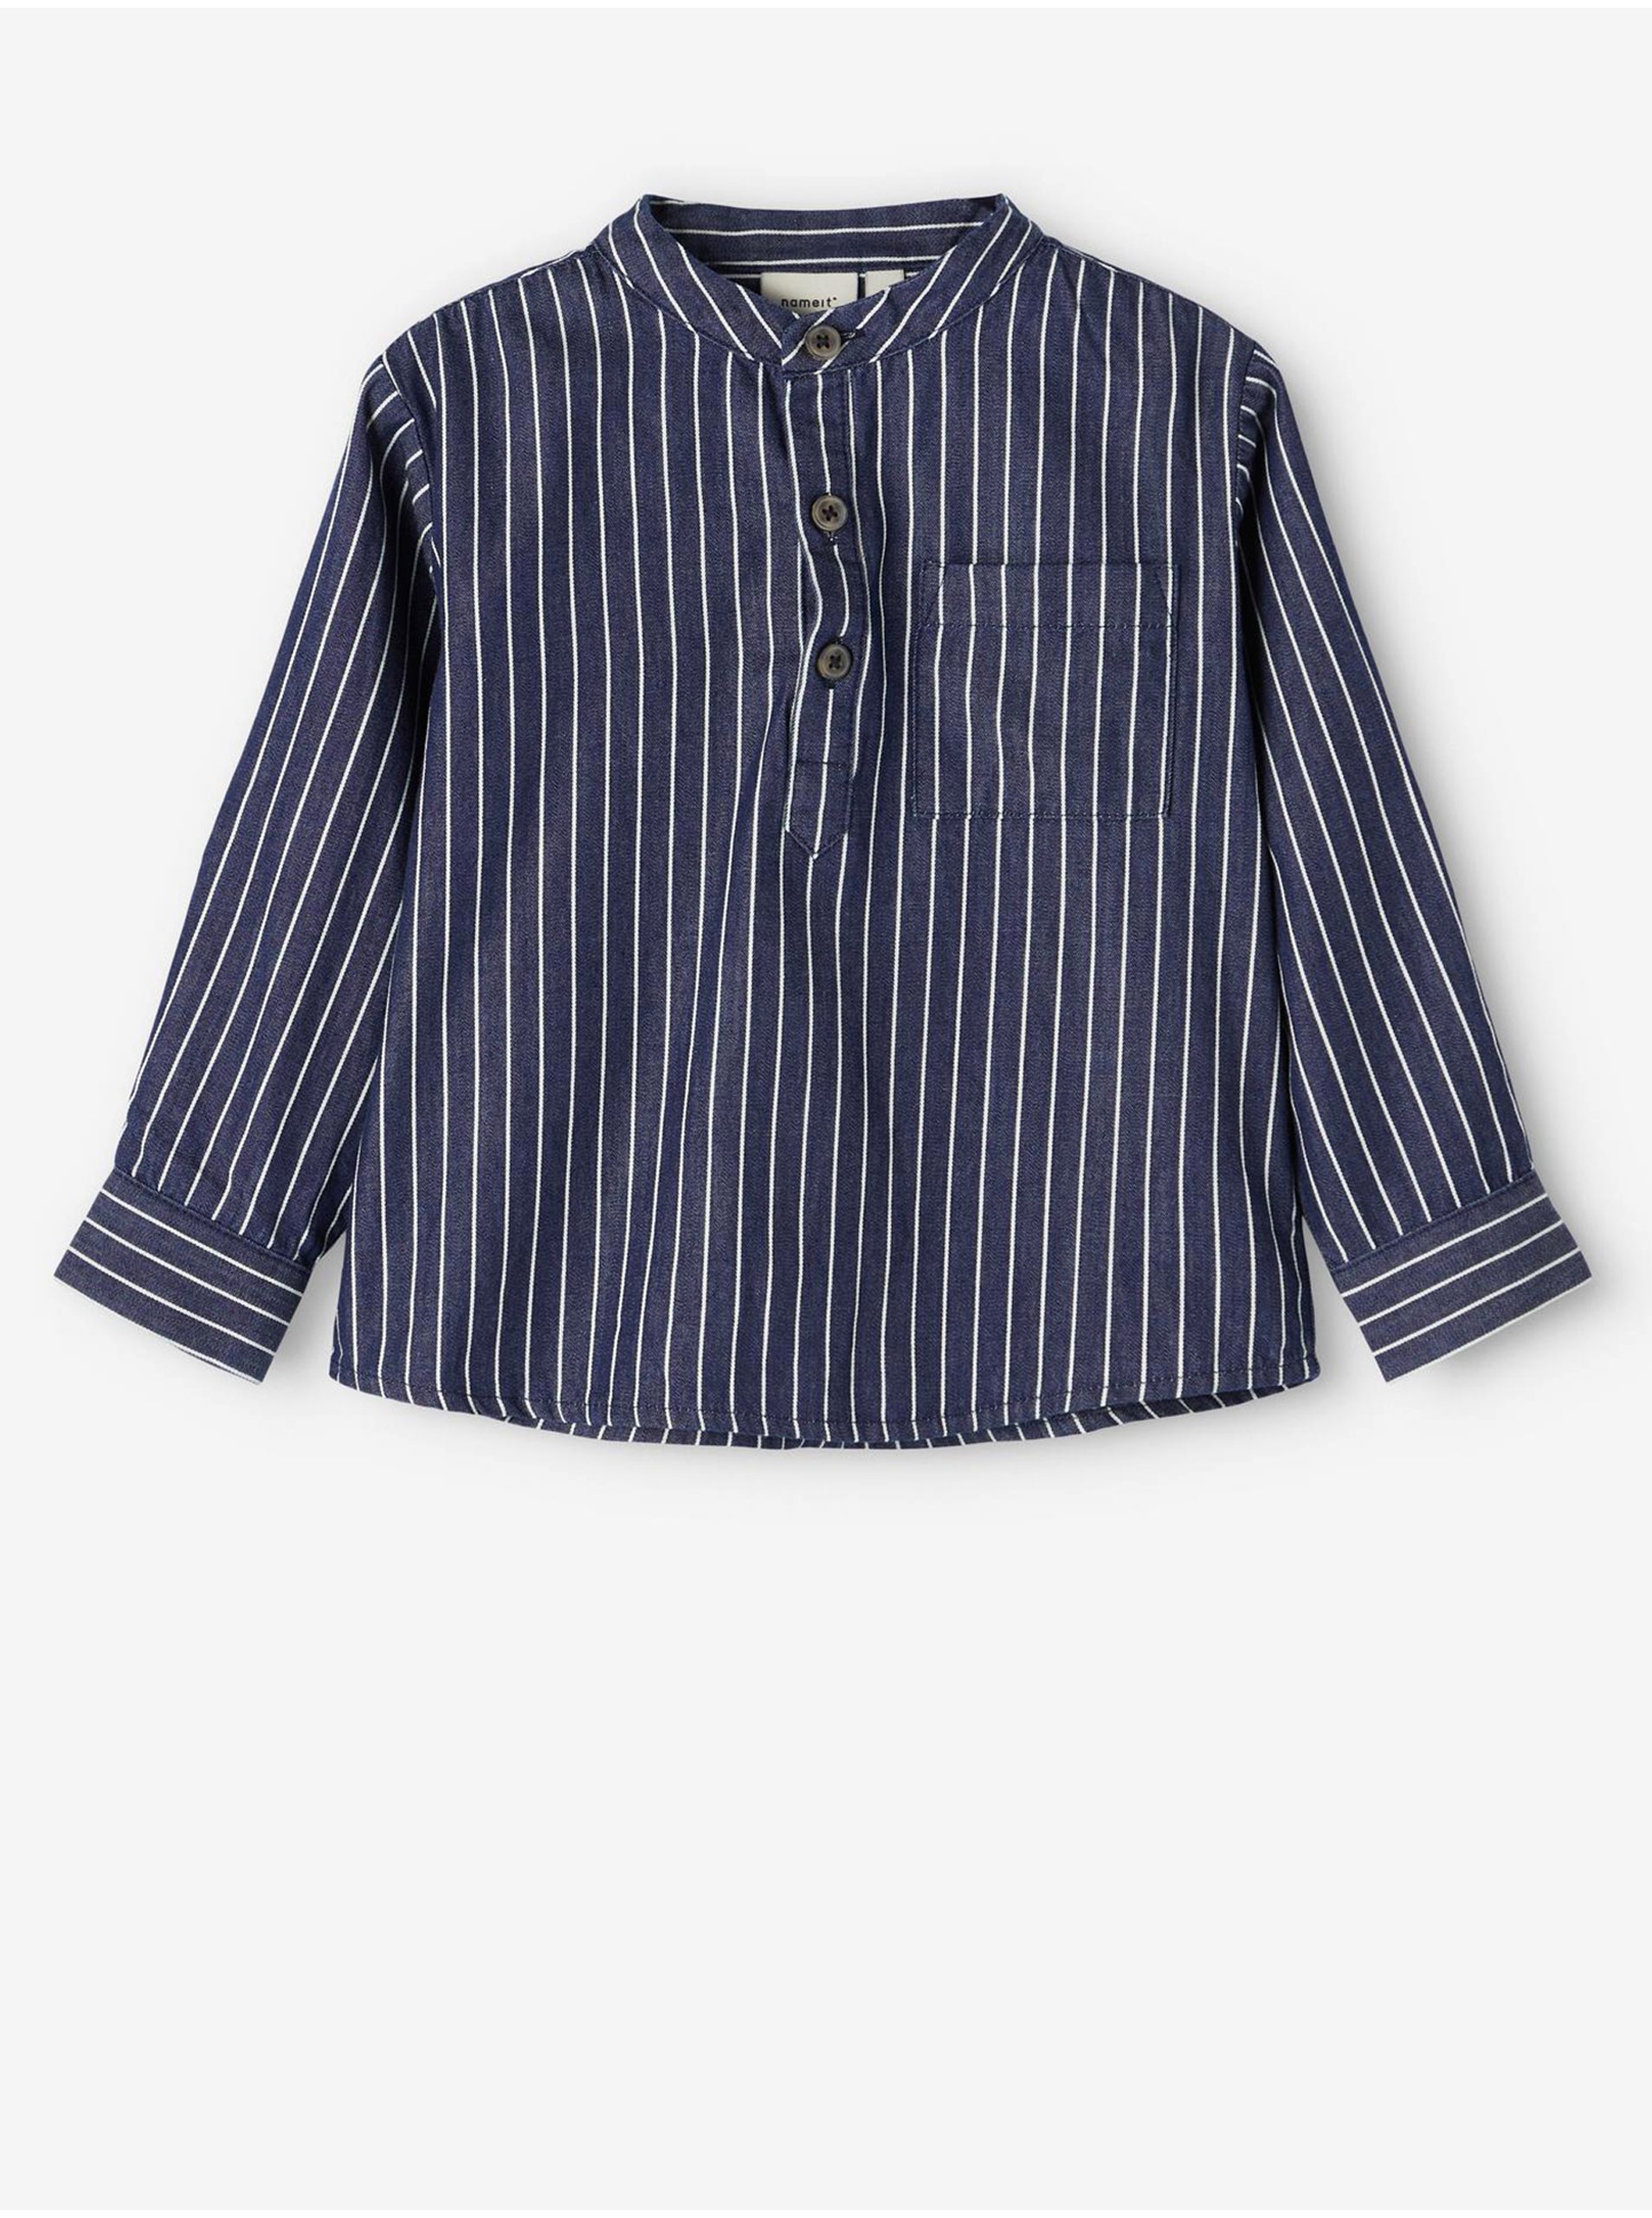 E-shop Tmavě modrá klučičí pruhovaná košile name it Stripes